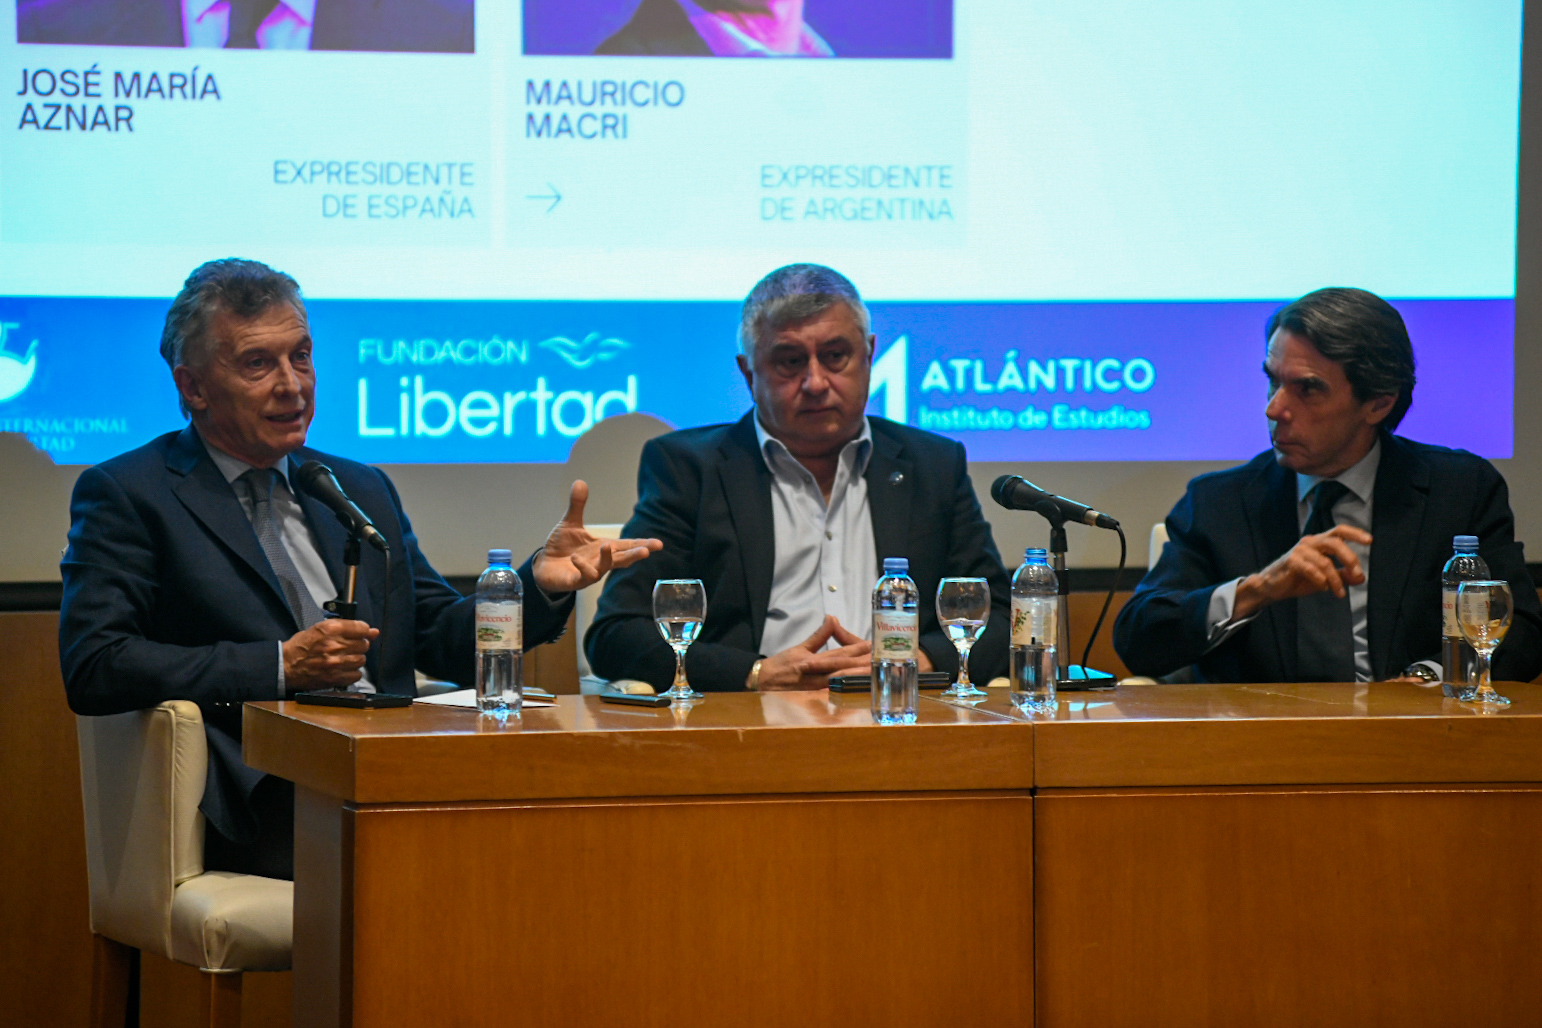 Macri, Gerardo Bongiovanni, y José María Aznar, en el seminario internacional (fotos Fundación Libertad)